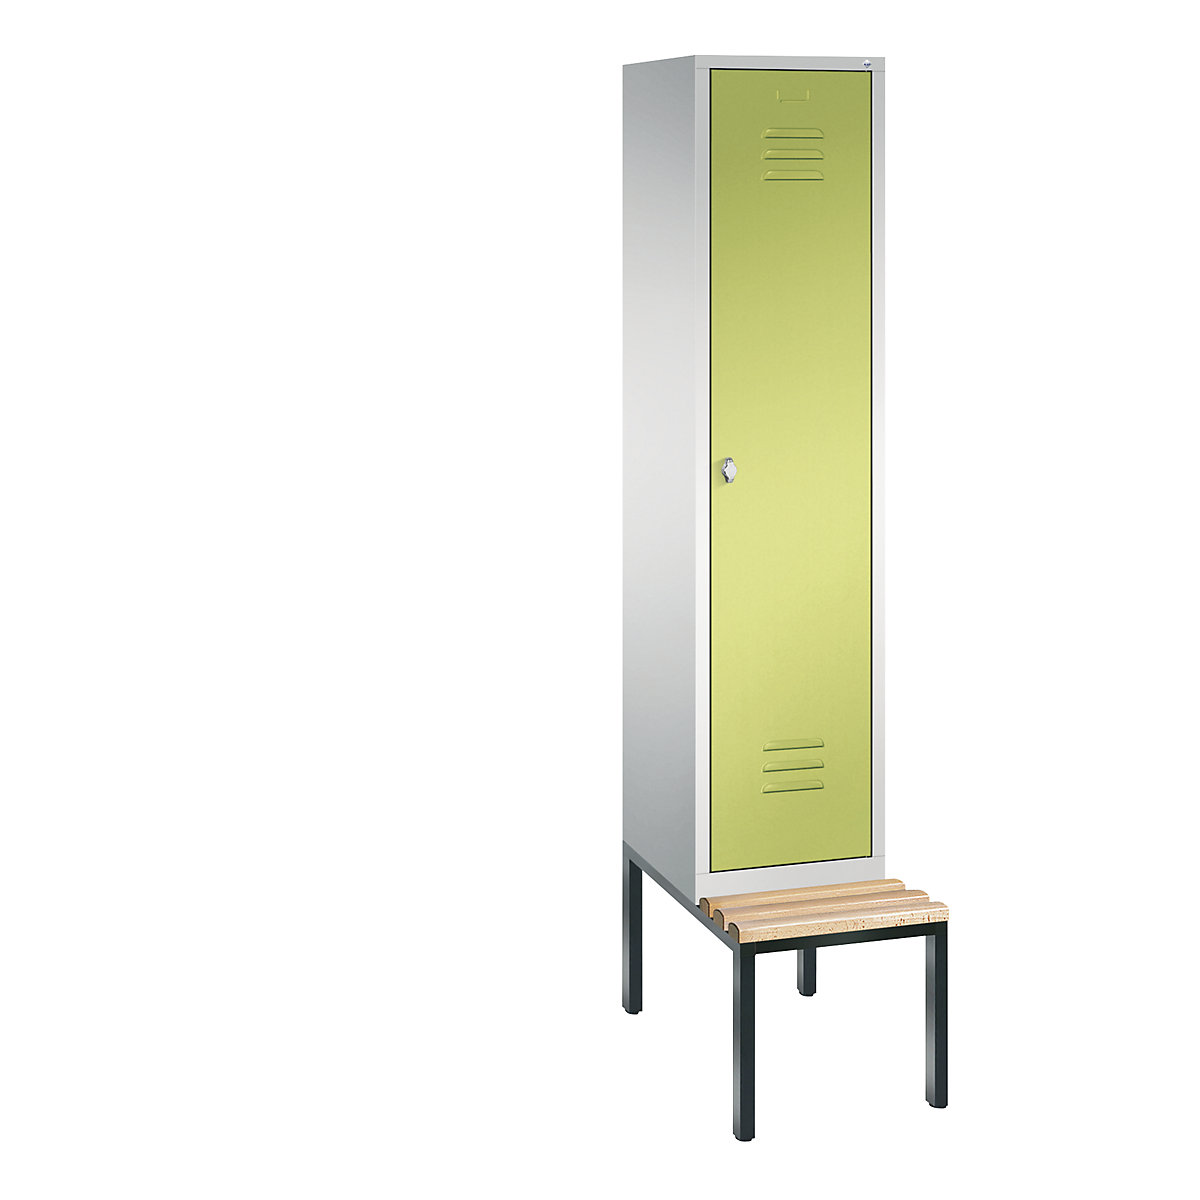 Garderobna omara CLASSIC s klopjo – C+P, 1 predelek, širina 400 mm/predelek, svetlo sive / rumeno zelene barve-11